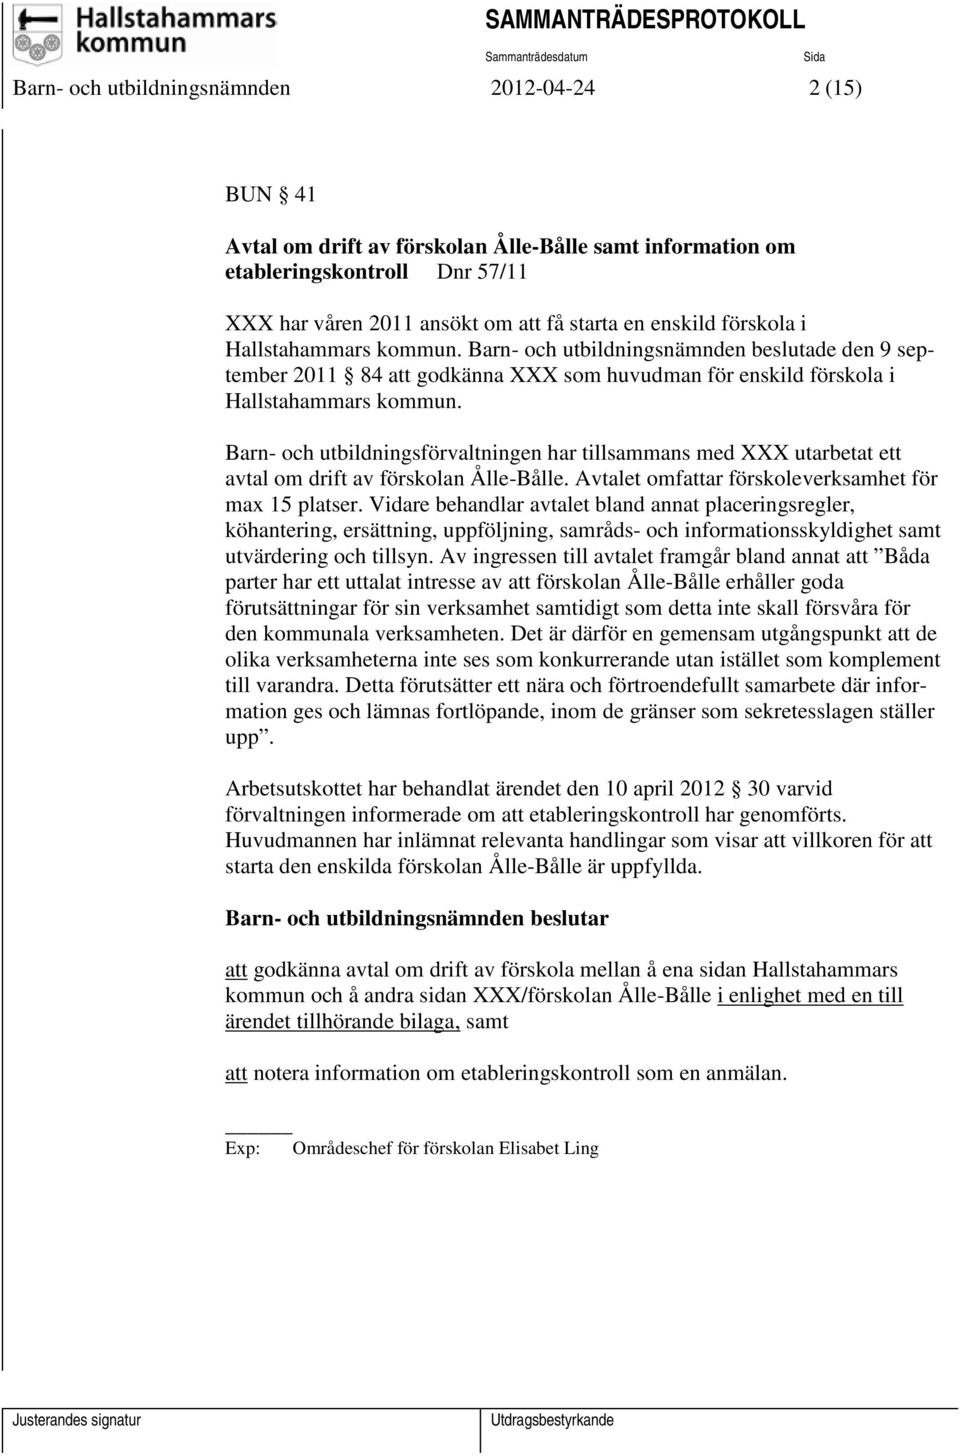 Barn- och utbildningsförvaltningen har tillsammans med XXX utarbetat ett avtal om drift av förskolan Ålle-Bålle. Avtalet omfattar förskoleverksamhet för max 15 platser.